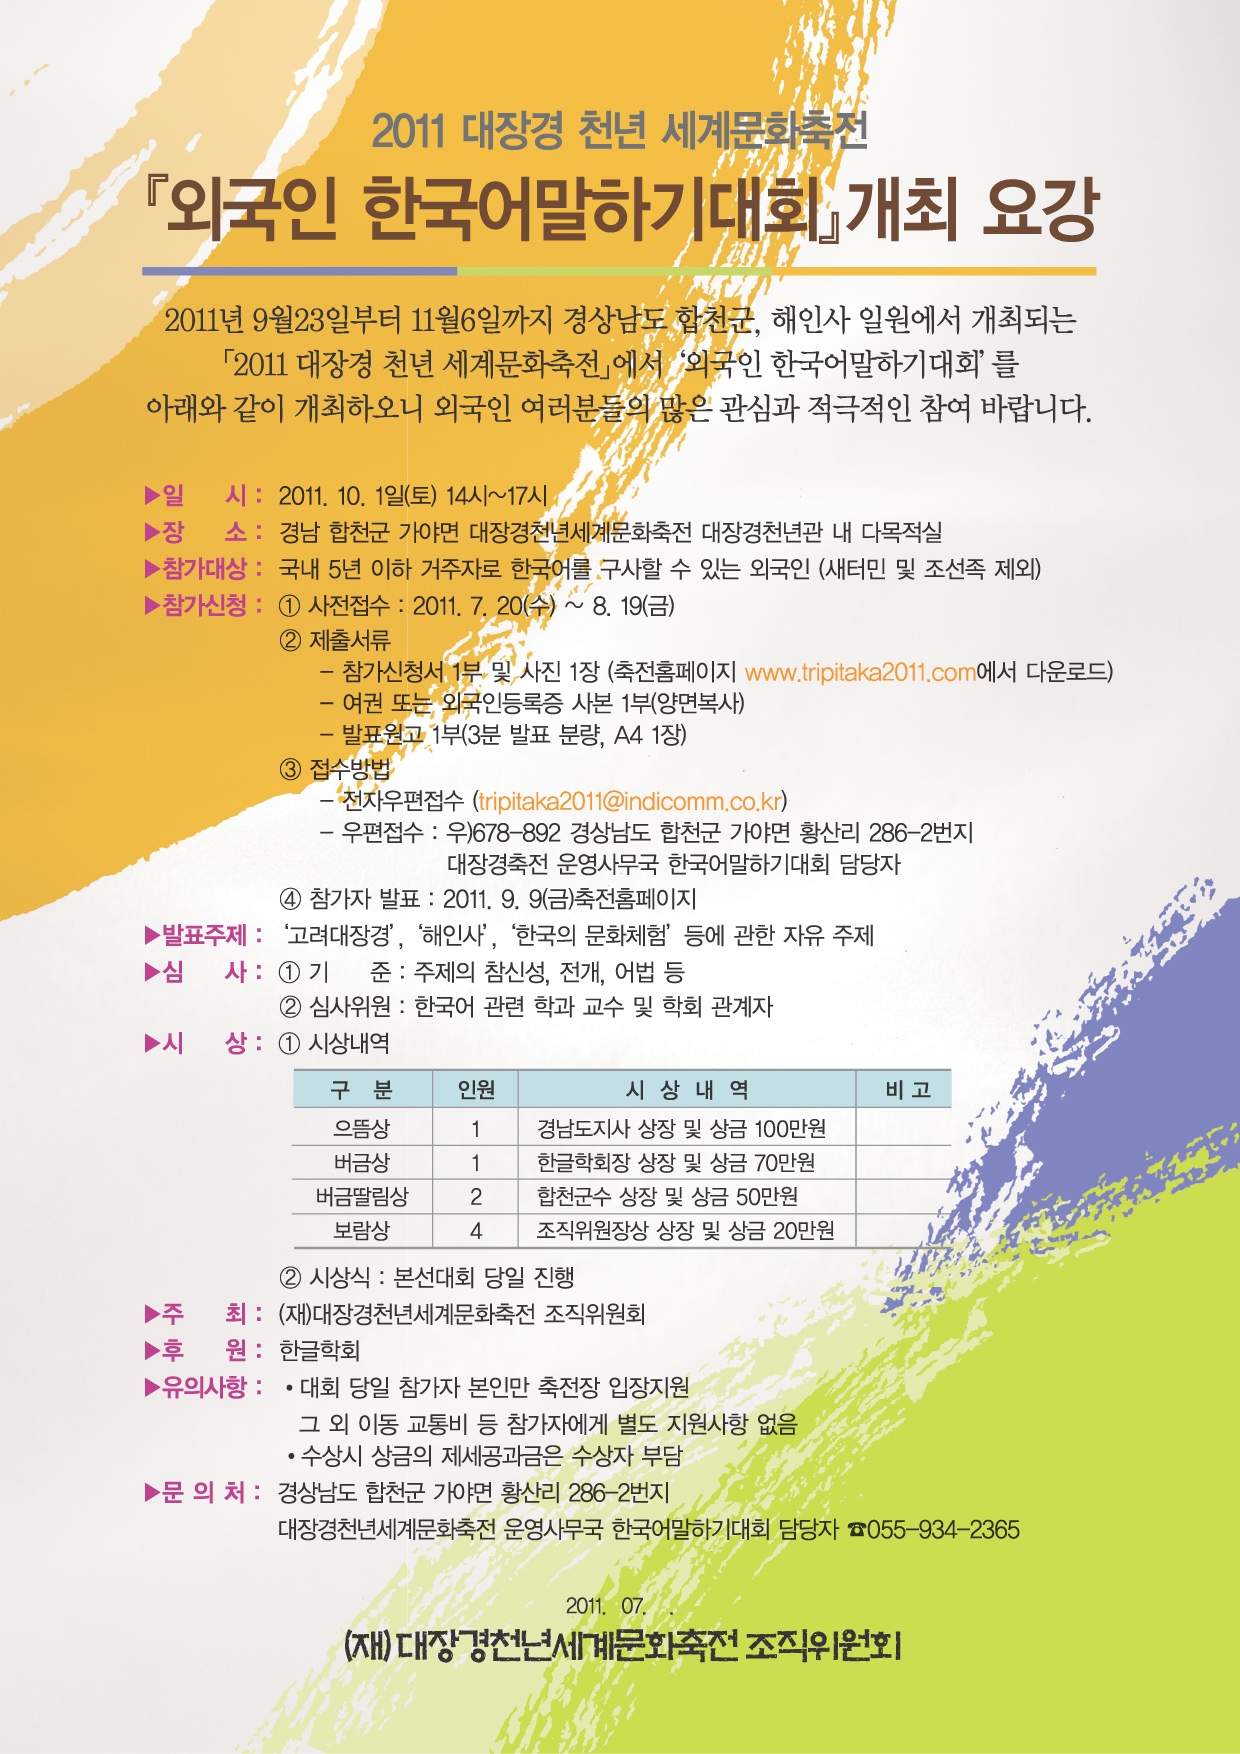 2011 대장경천년세계문화축전 『외국인 한국어말하기 대회』 개최 3